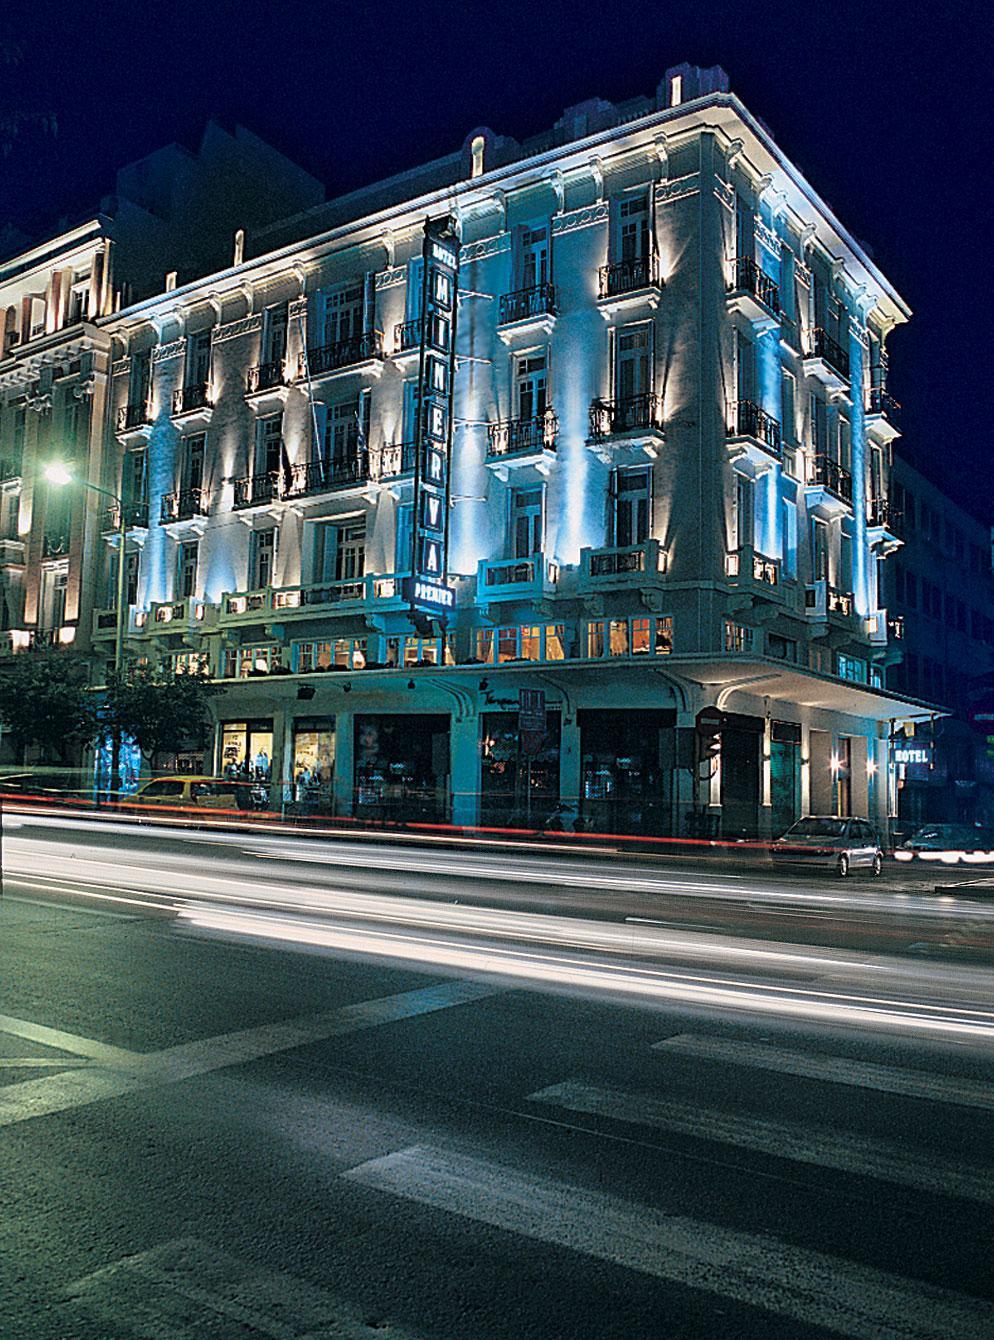 Minerva Premier Hotel Szaloniki Kültér fotó